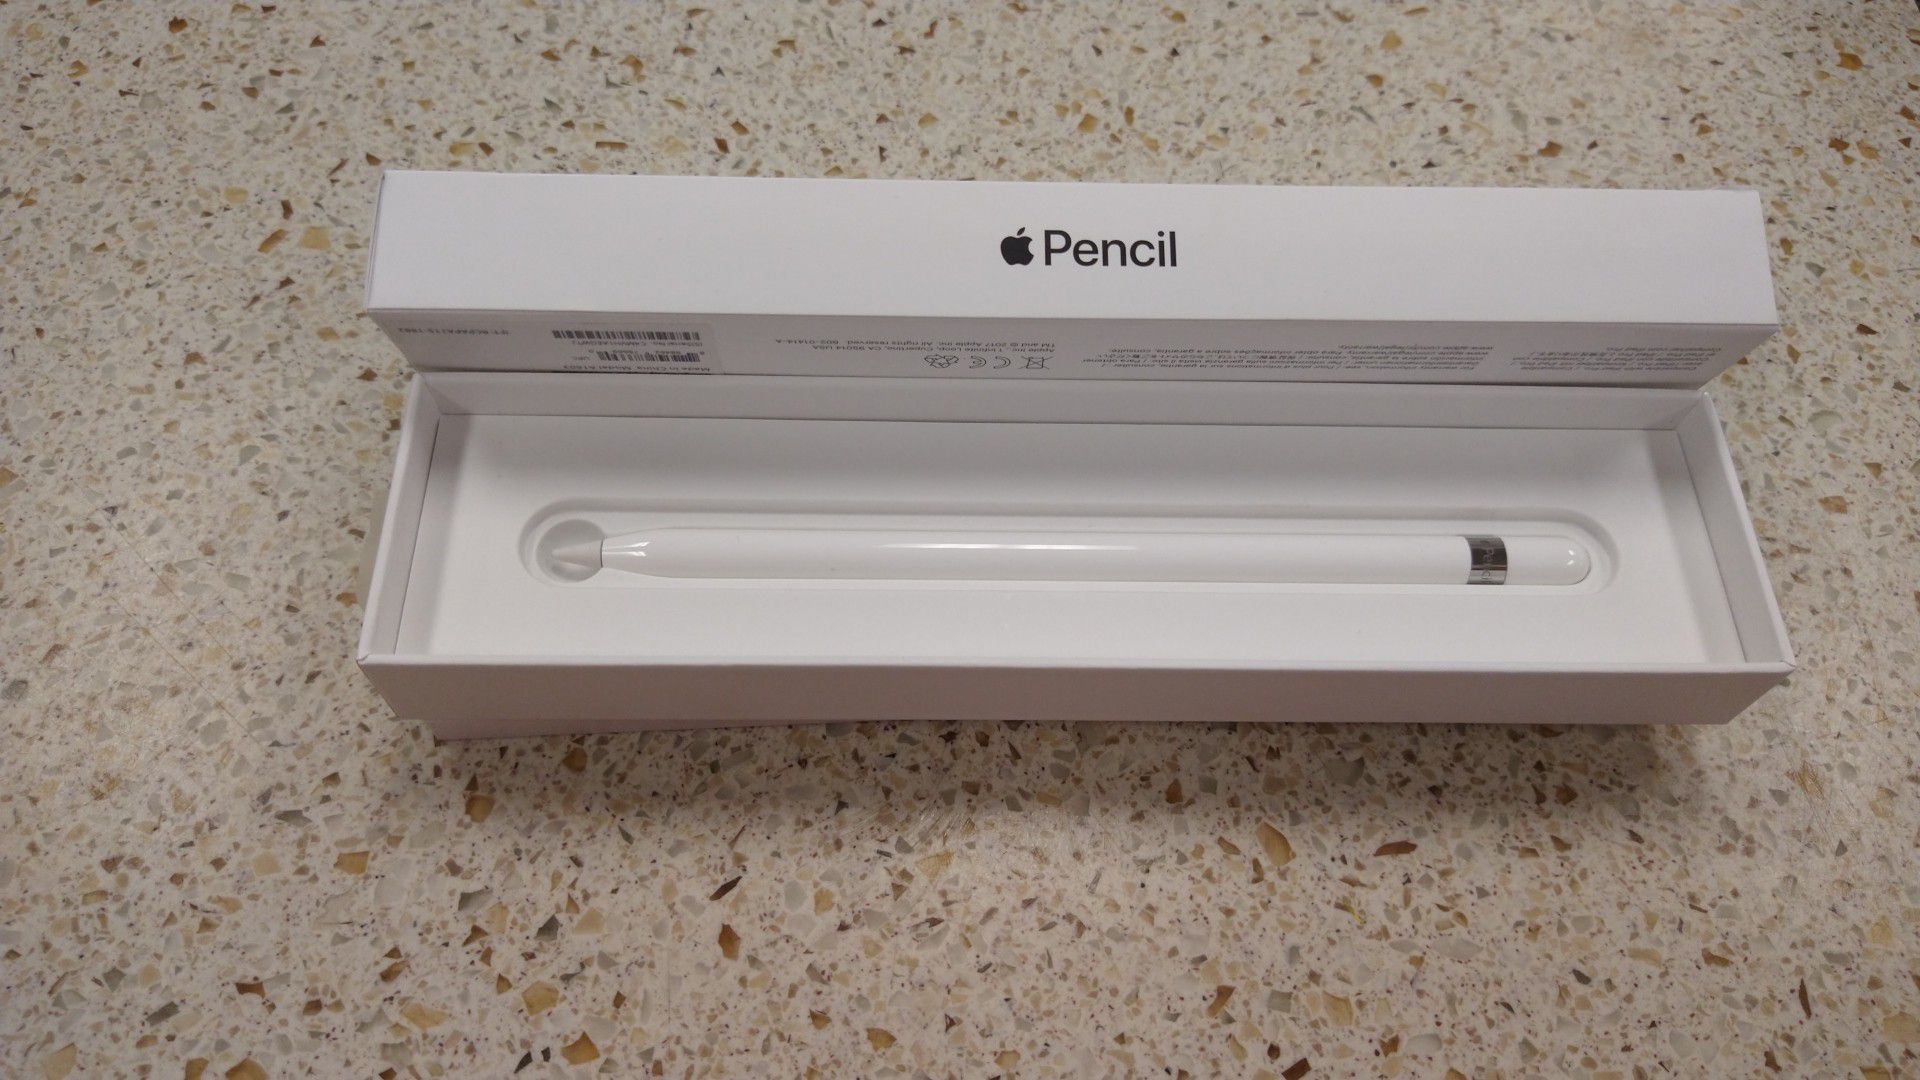 Apple Pencil Model A1603